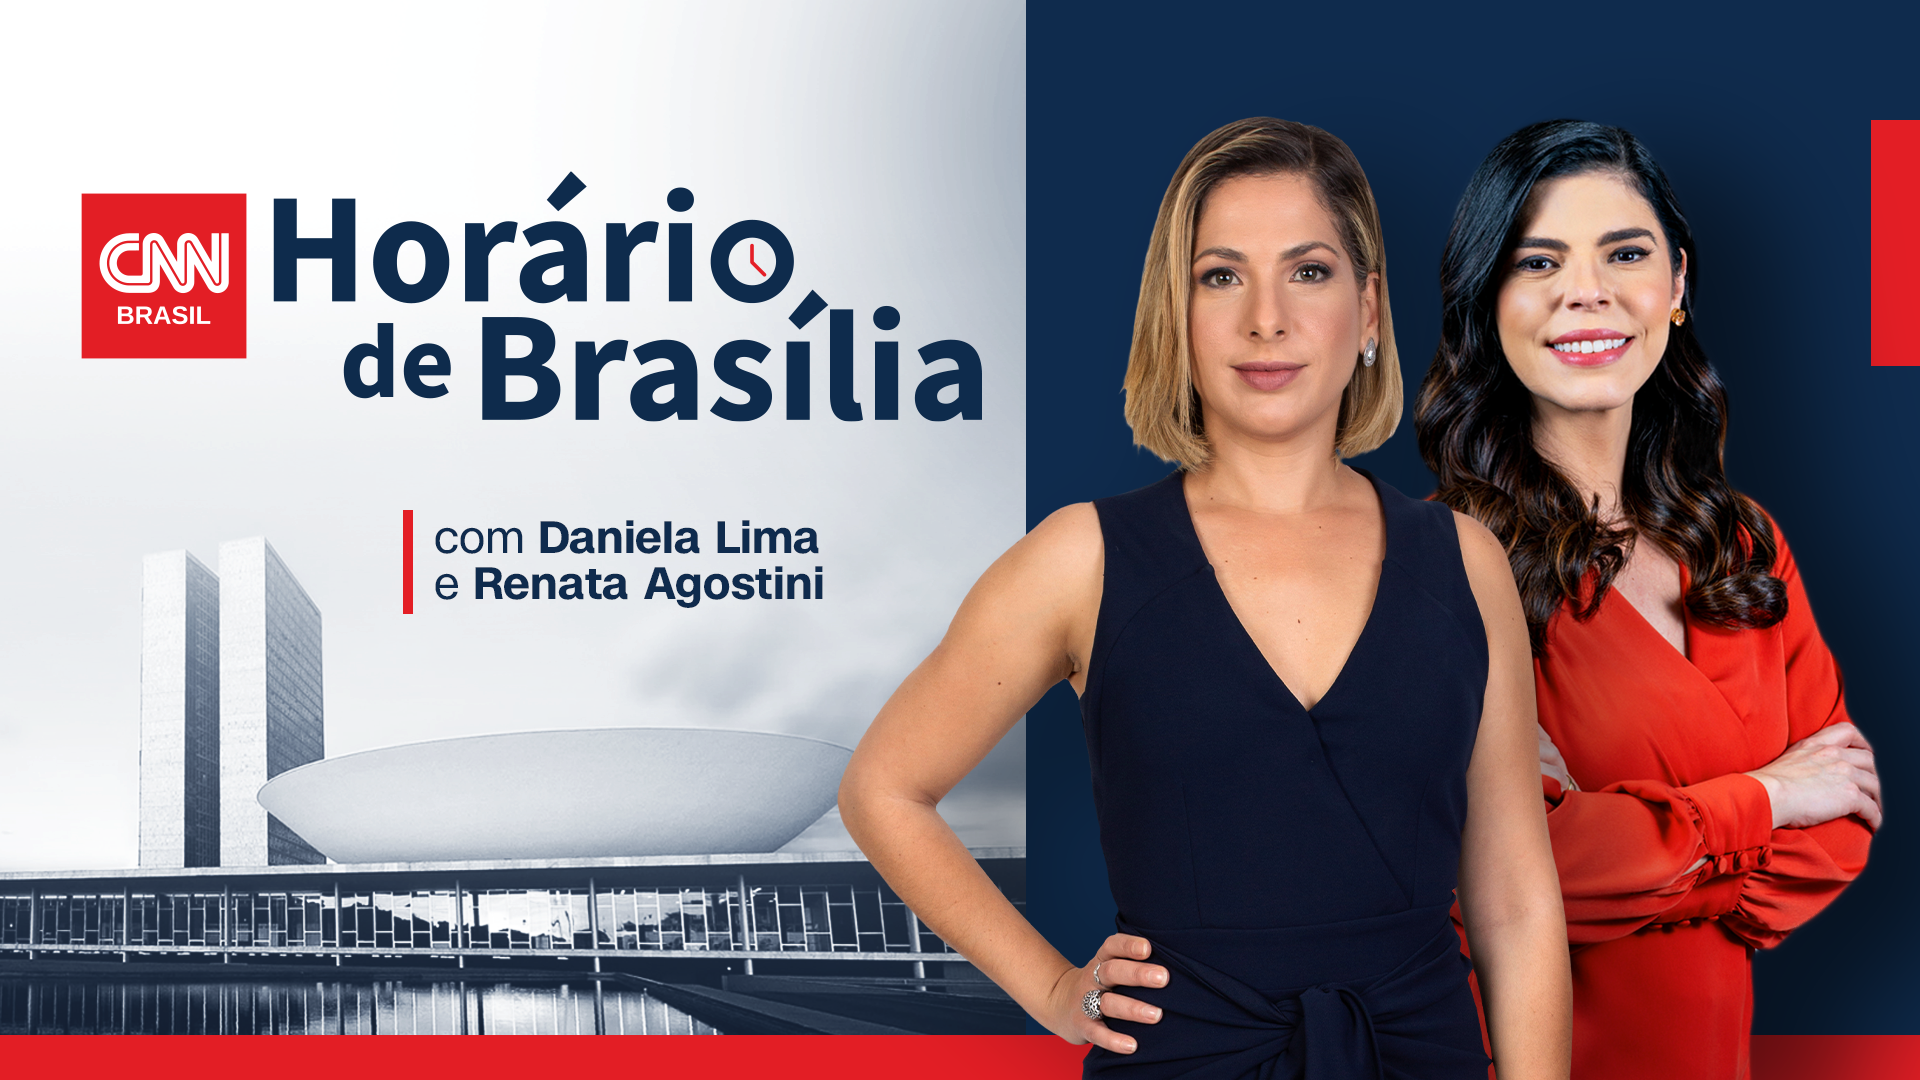 Horário de Brasília ao vivo, com Daniela Lima e Renata Agostini